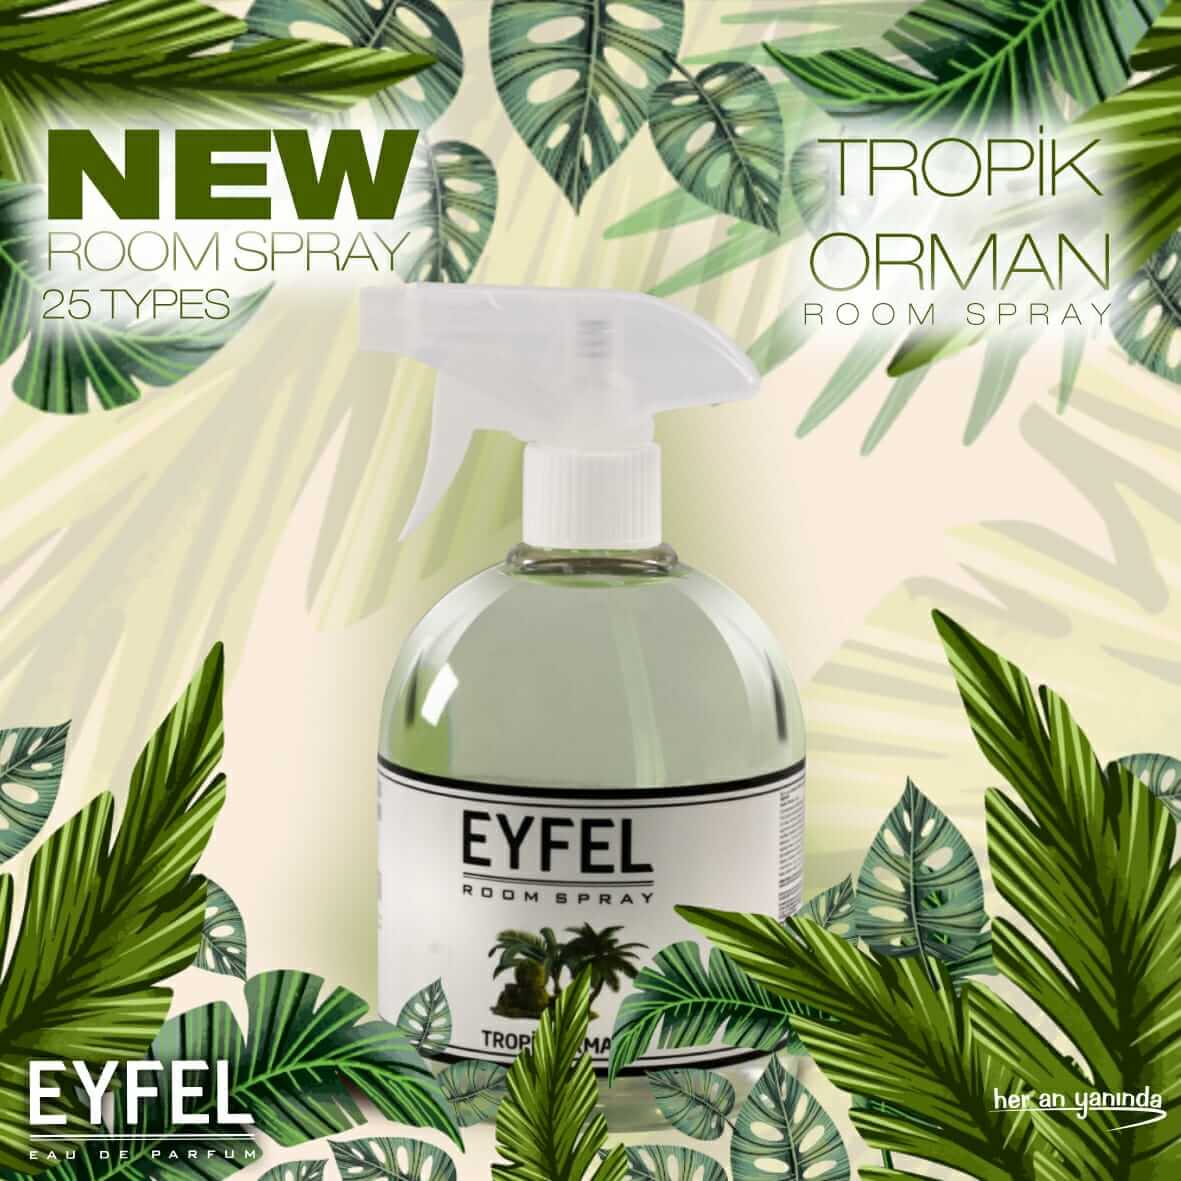 Eyfel Perfume Room Spray Cherry - Lufterfrischer-Spray Kirsche